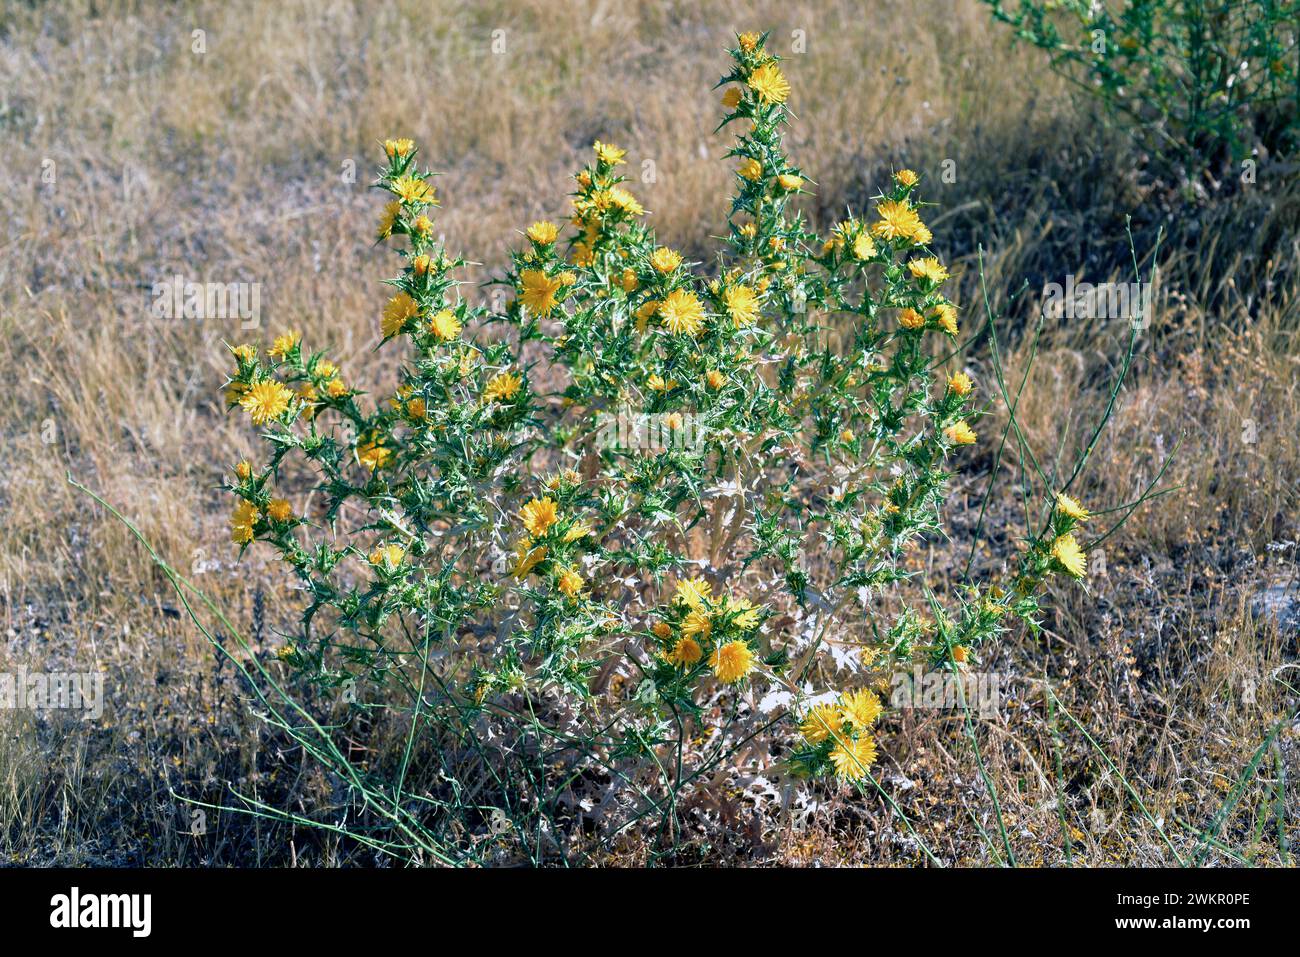 Die spanische Austerndistel (Scolymus hispanicus) ist eine in Südwesteuropa heimische, zweijährige oder mehrjährige Stachelpflanze. Dieses Foto wurde in Arr aufgenommen Stockfoto